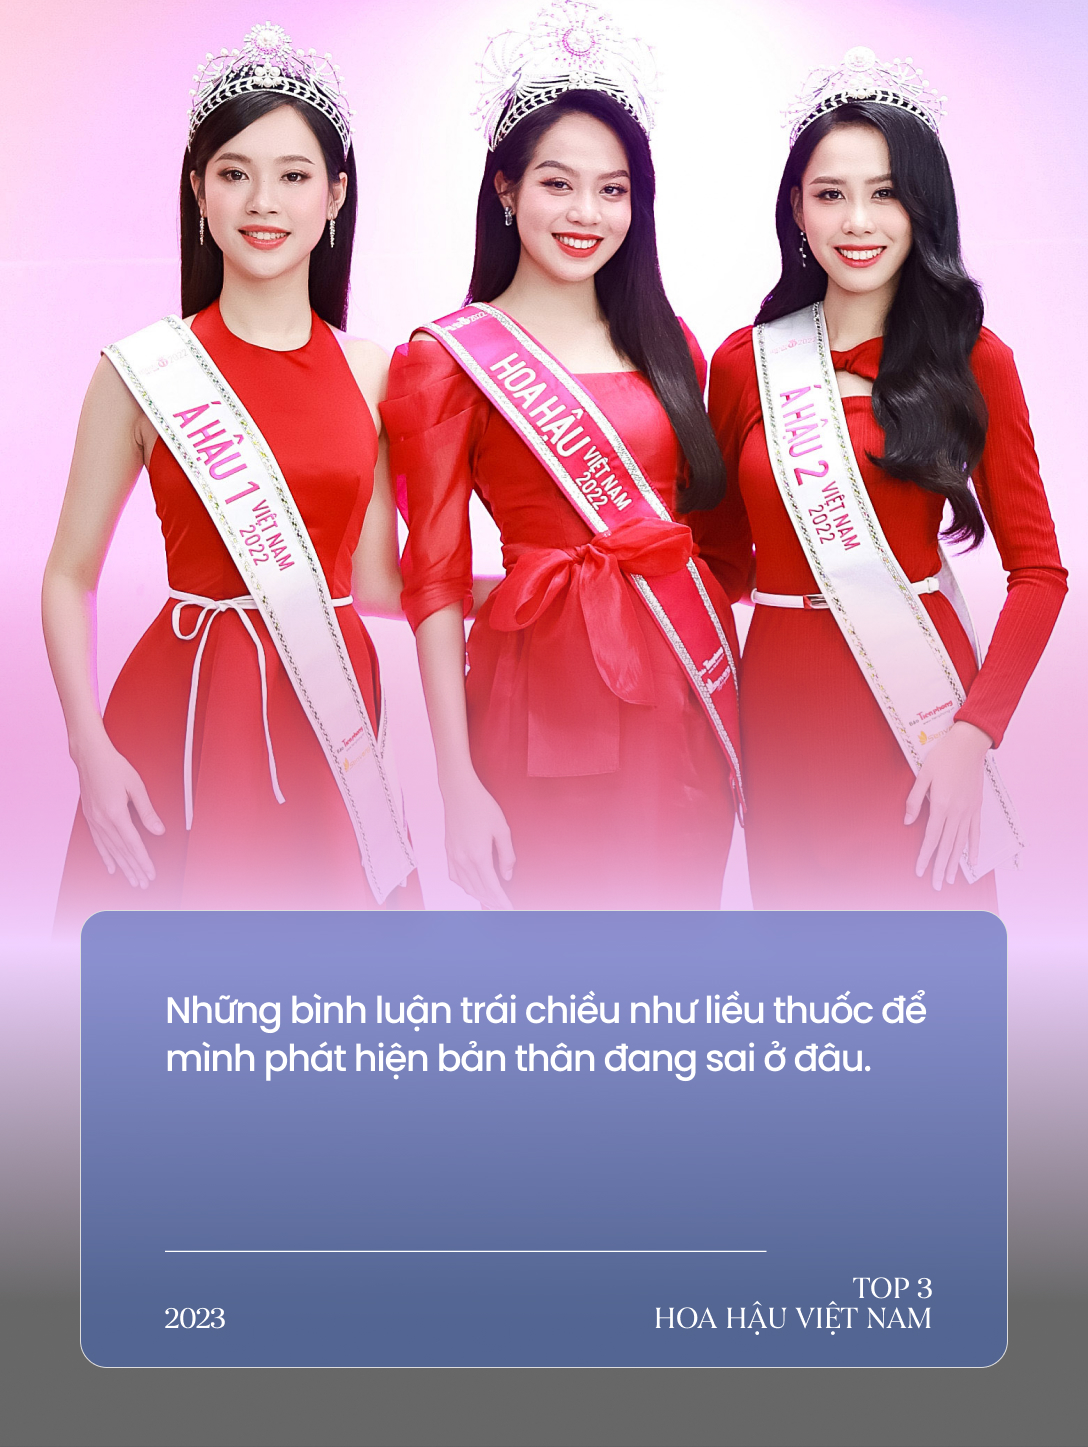 Gặp Top 3 Hoa hậu Việt Nam ngày cận Tết: Hoa hậu không chỉ cần mỗi nhan sắc; Không ai có quyền can thiệp quyết định tiến vào showbiz - Ảnh 3.